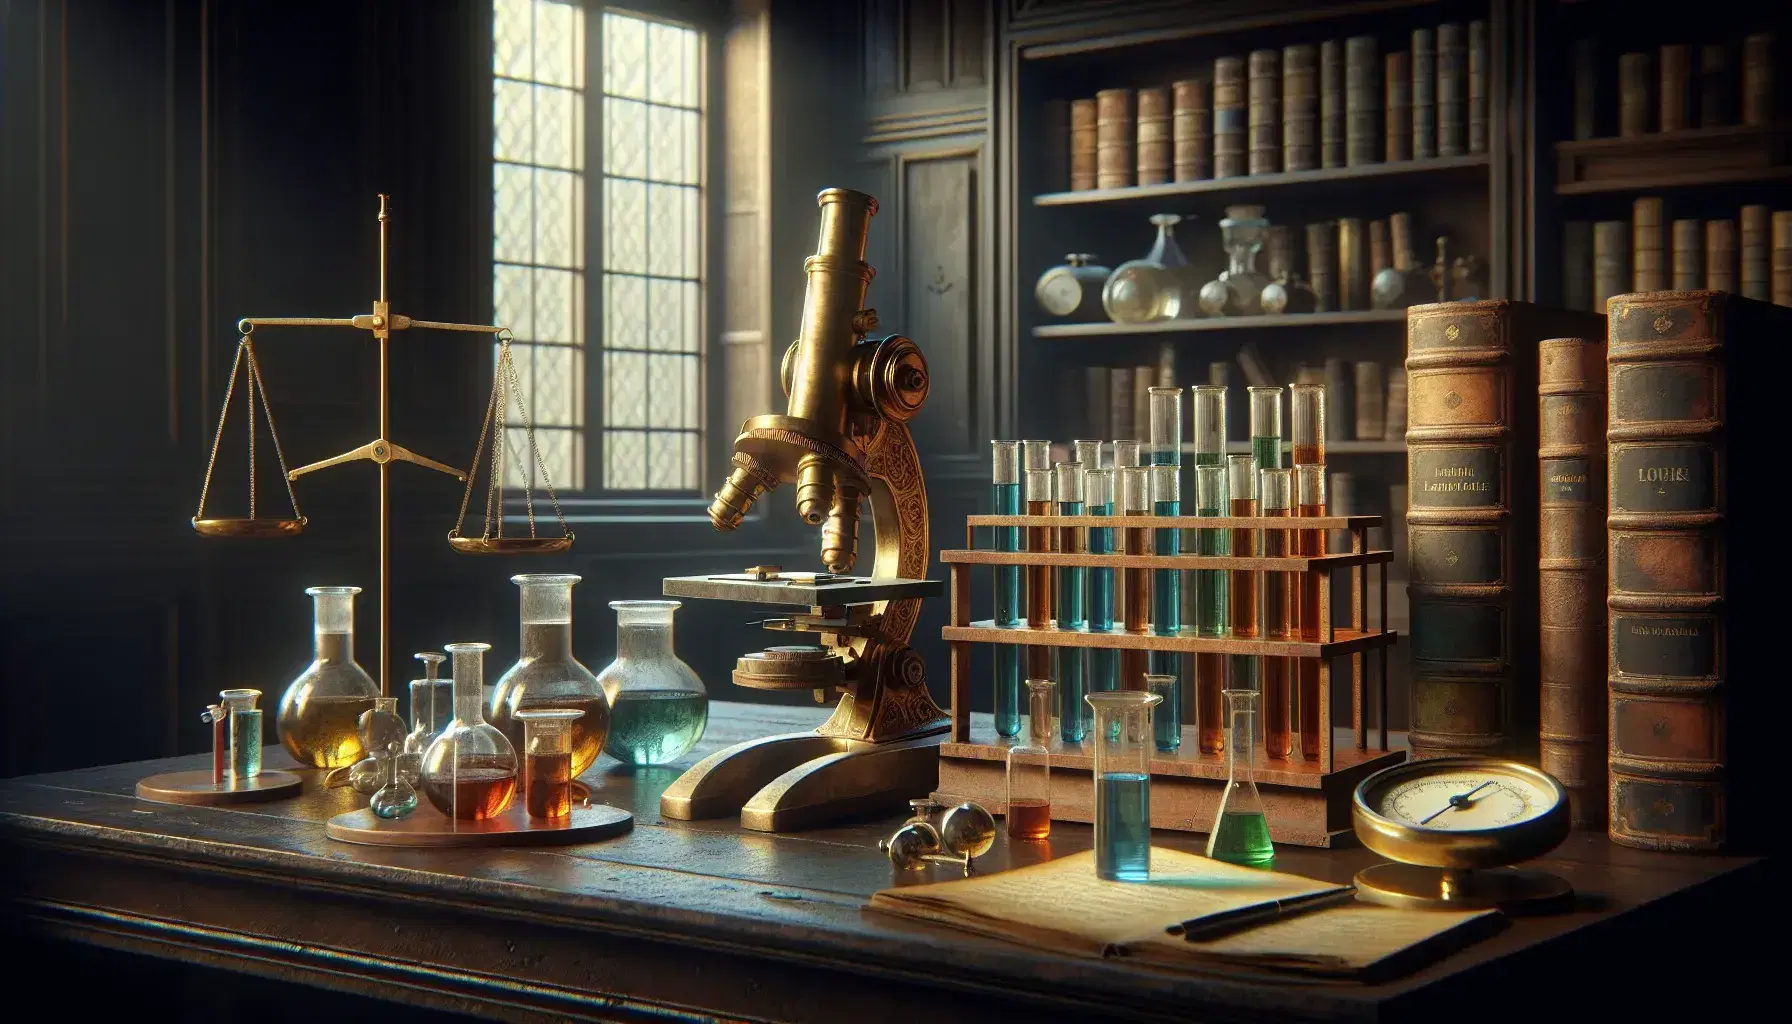 Laboratorio científico antiguo con microscopio de bronce, tubos de ensayo con líquidos coloridos y balanza con pesas, en un ambiente sereno iluminado naturalmente.